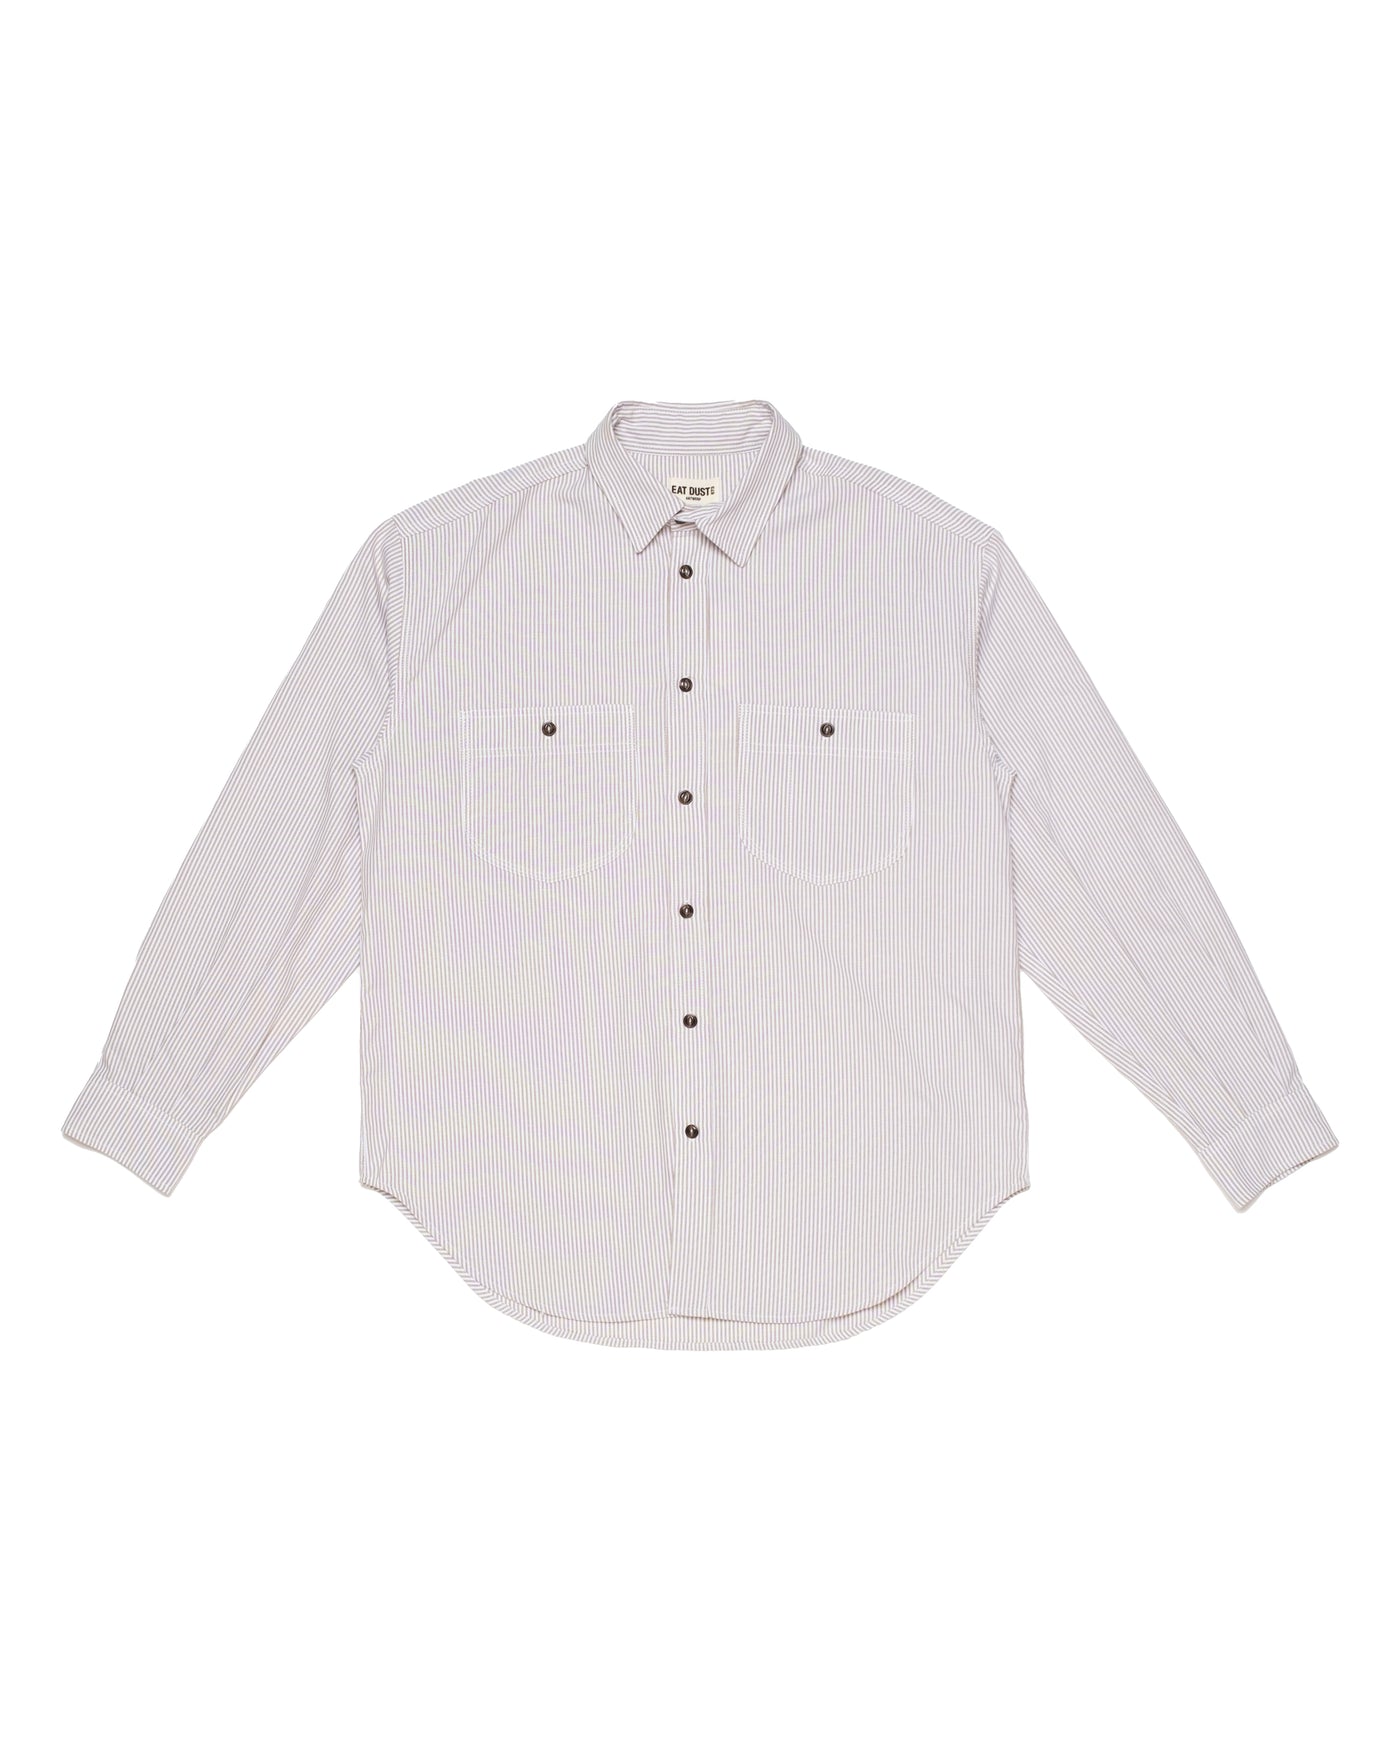 G.o.D Mechanic Shirt Oxford Stripe Brown/White